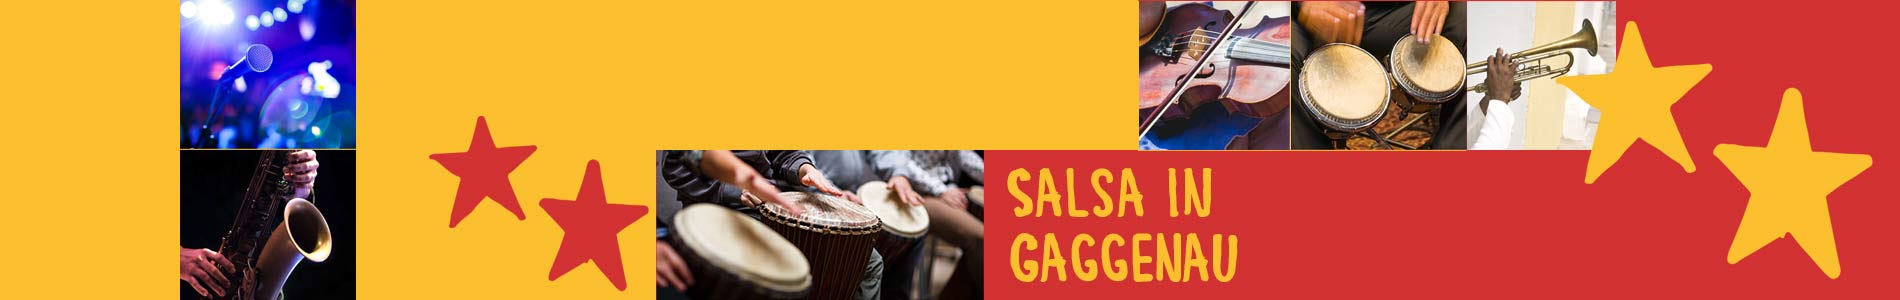 Salsa in Gaggenau – Salsa lernen und tanzen, Tanzkurse, Partys, Veranstaltungen